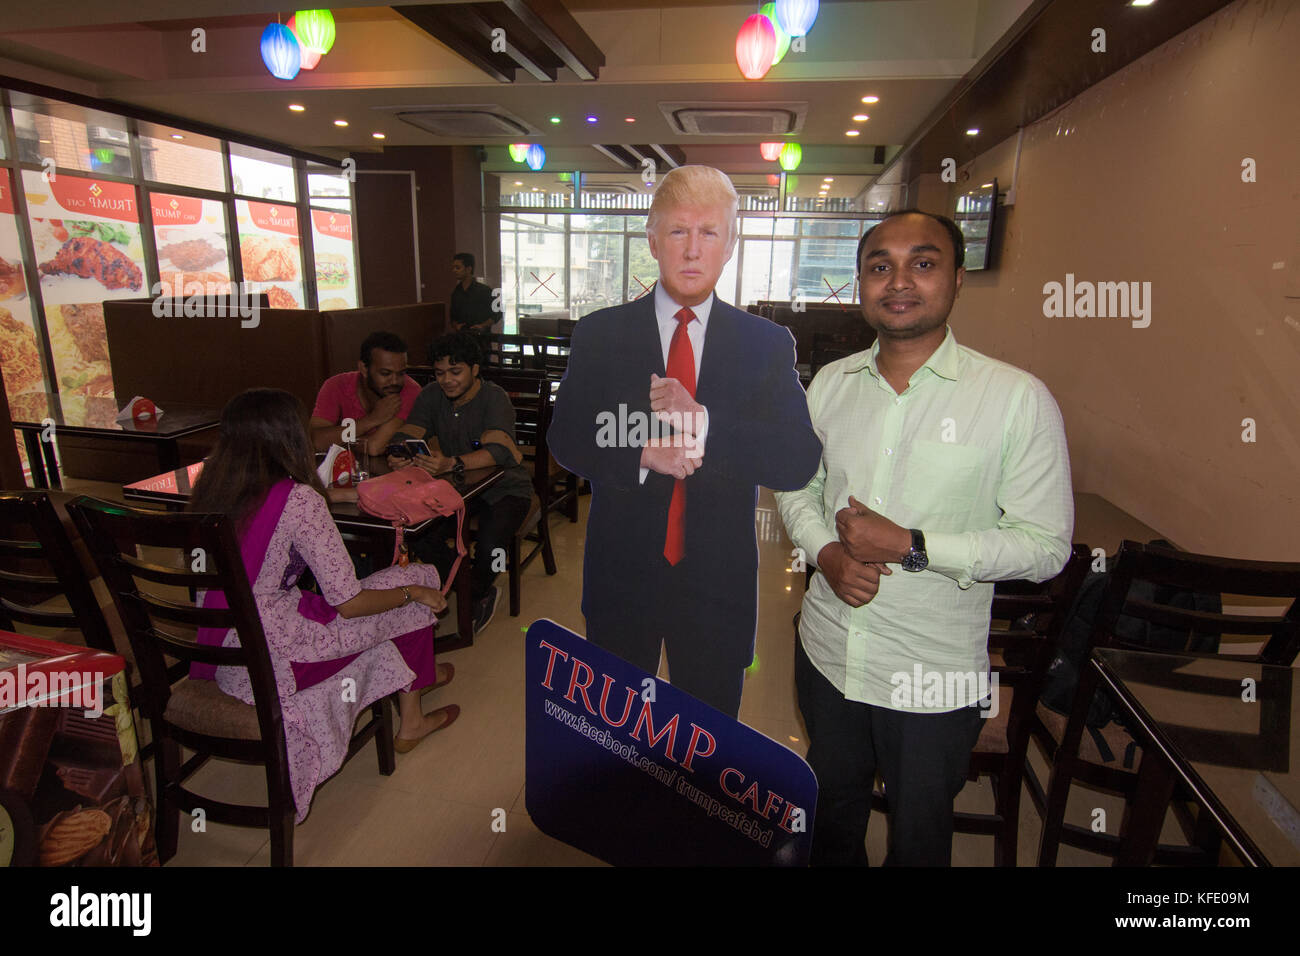 Donald Trump's fanbase di Dhaka ha ora un funzionario di ritrovo spot - un ristorante qui che è stato denominato Trump Cafe negli Stati Uniti del presidente di onore. Foto Stock